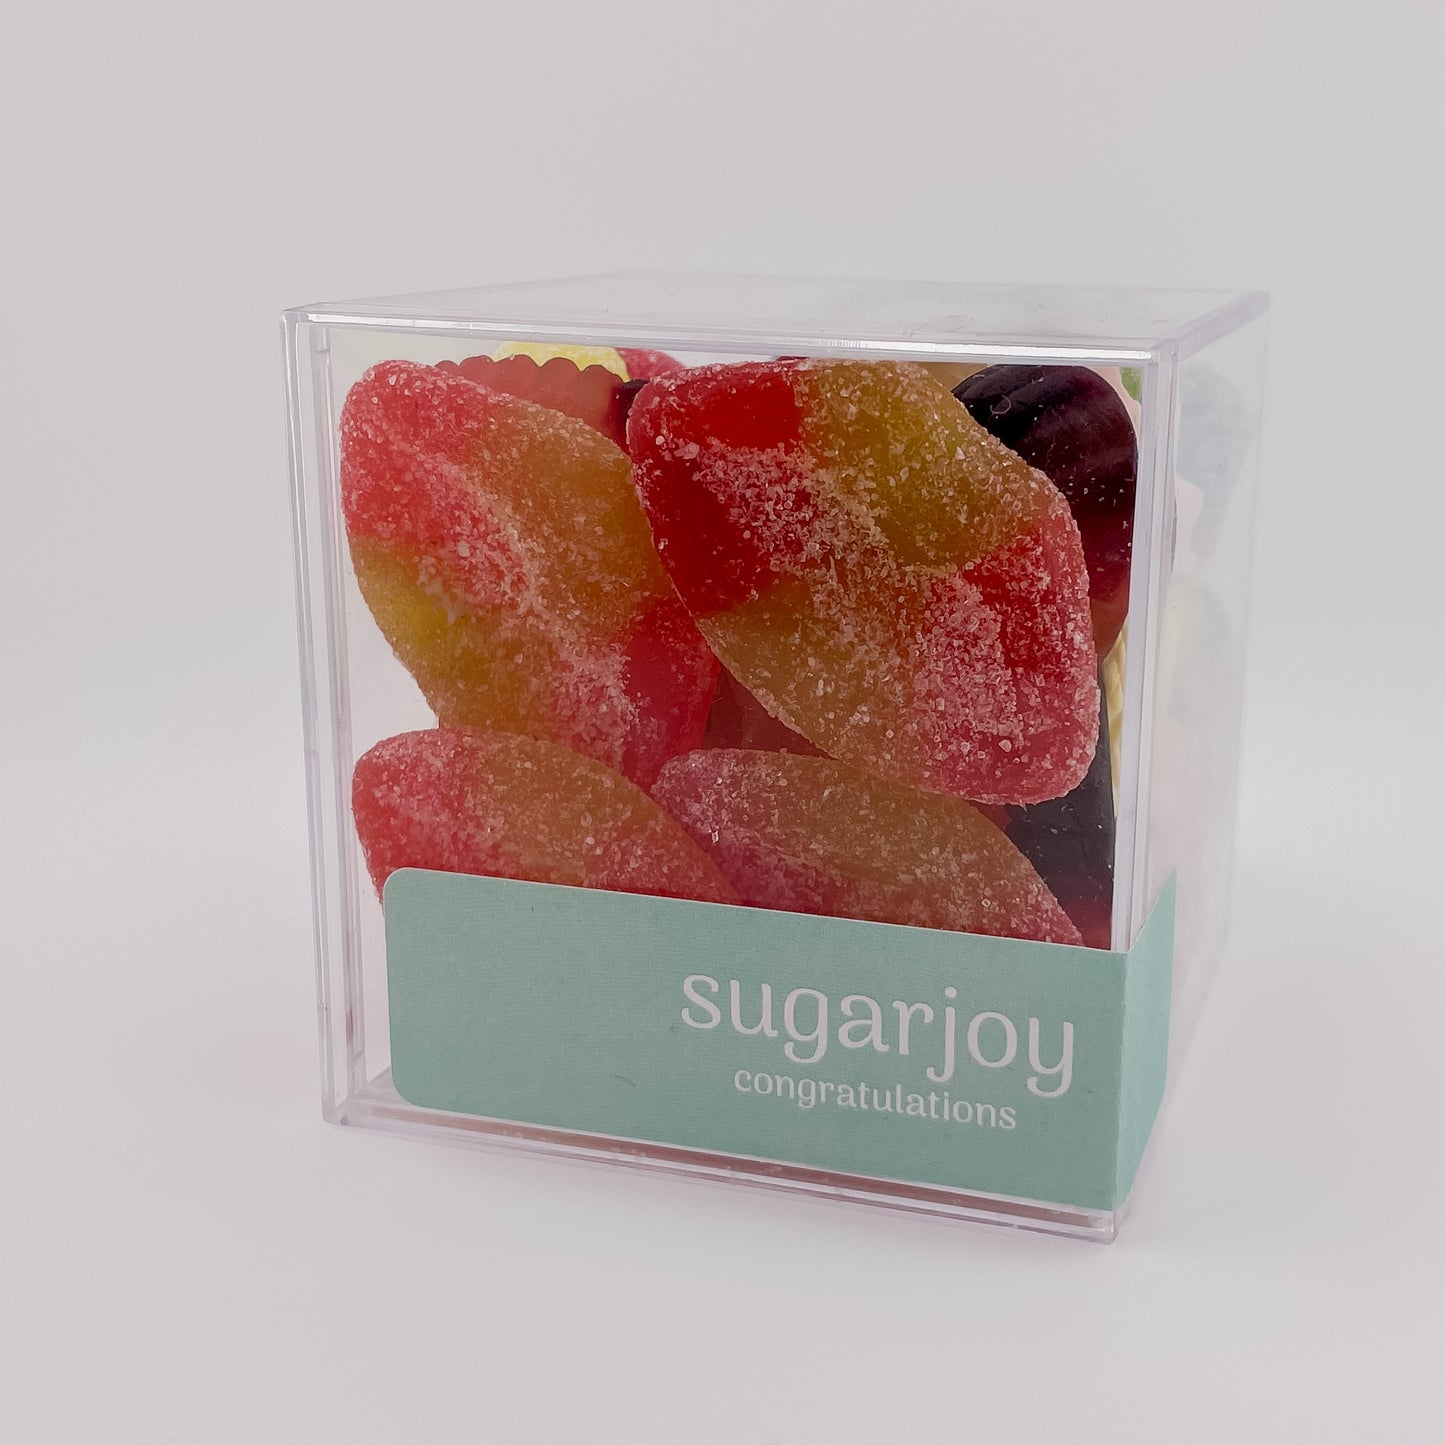 Sugarjoy Swedish Candy